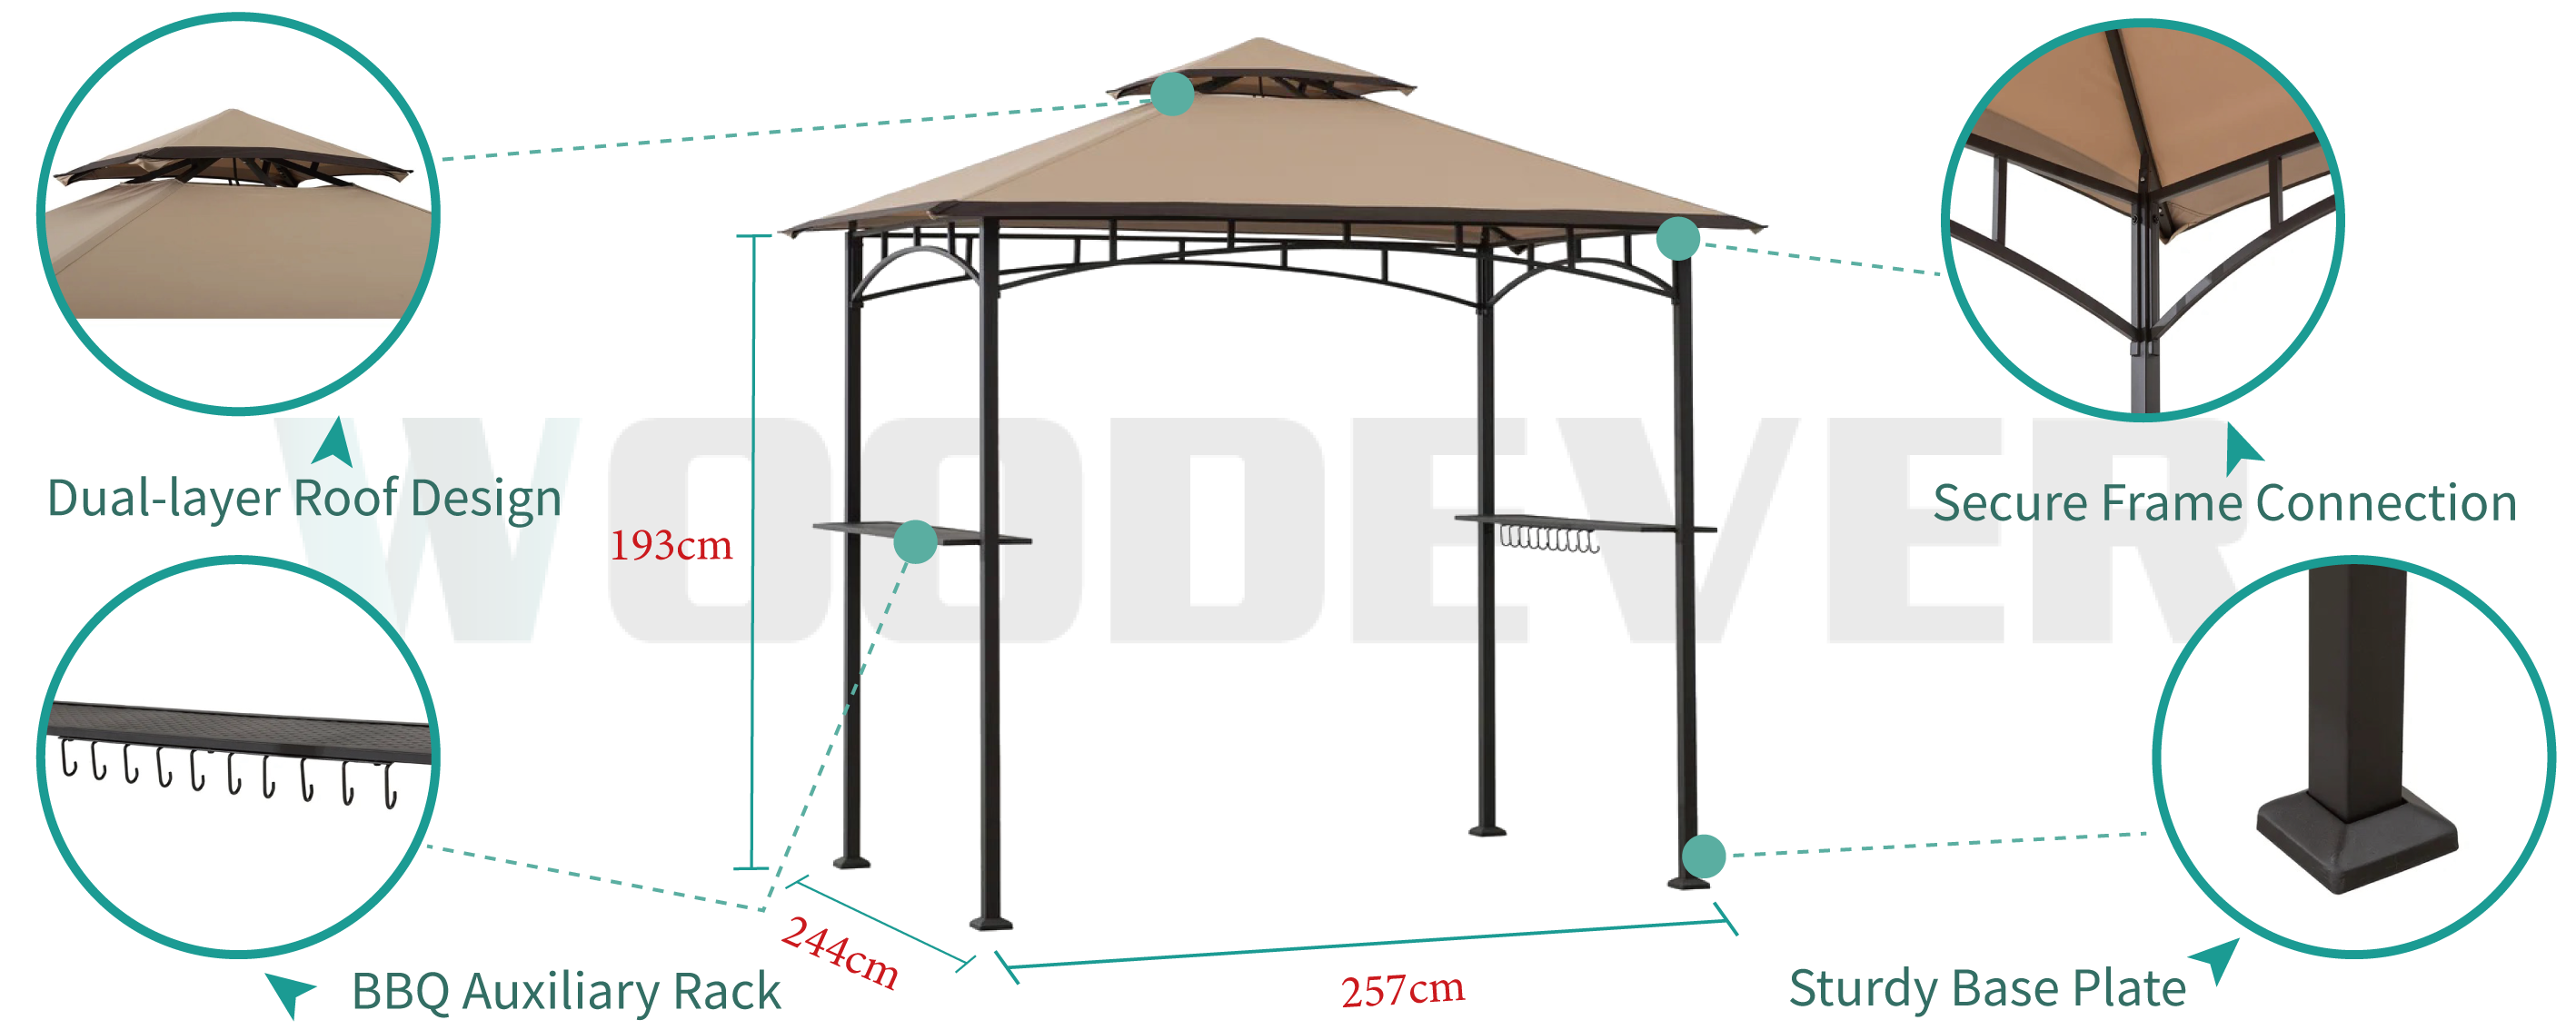 Pergola in metallo per barbecue all'aperto di WOODEVER con design a doppio tetto, ventilazione a 360 gradi, con ripiani e ganci in metallo per migliorare l'esperienza d'uso all'aperto.